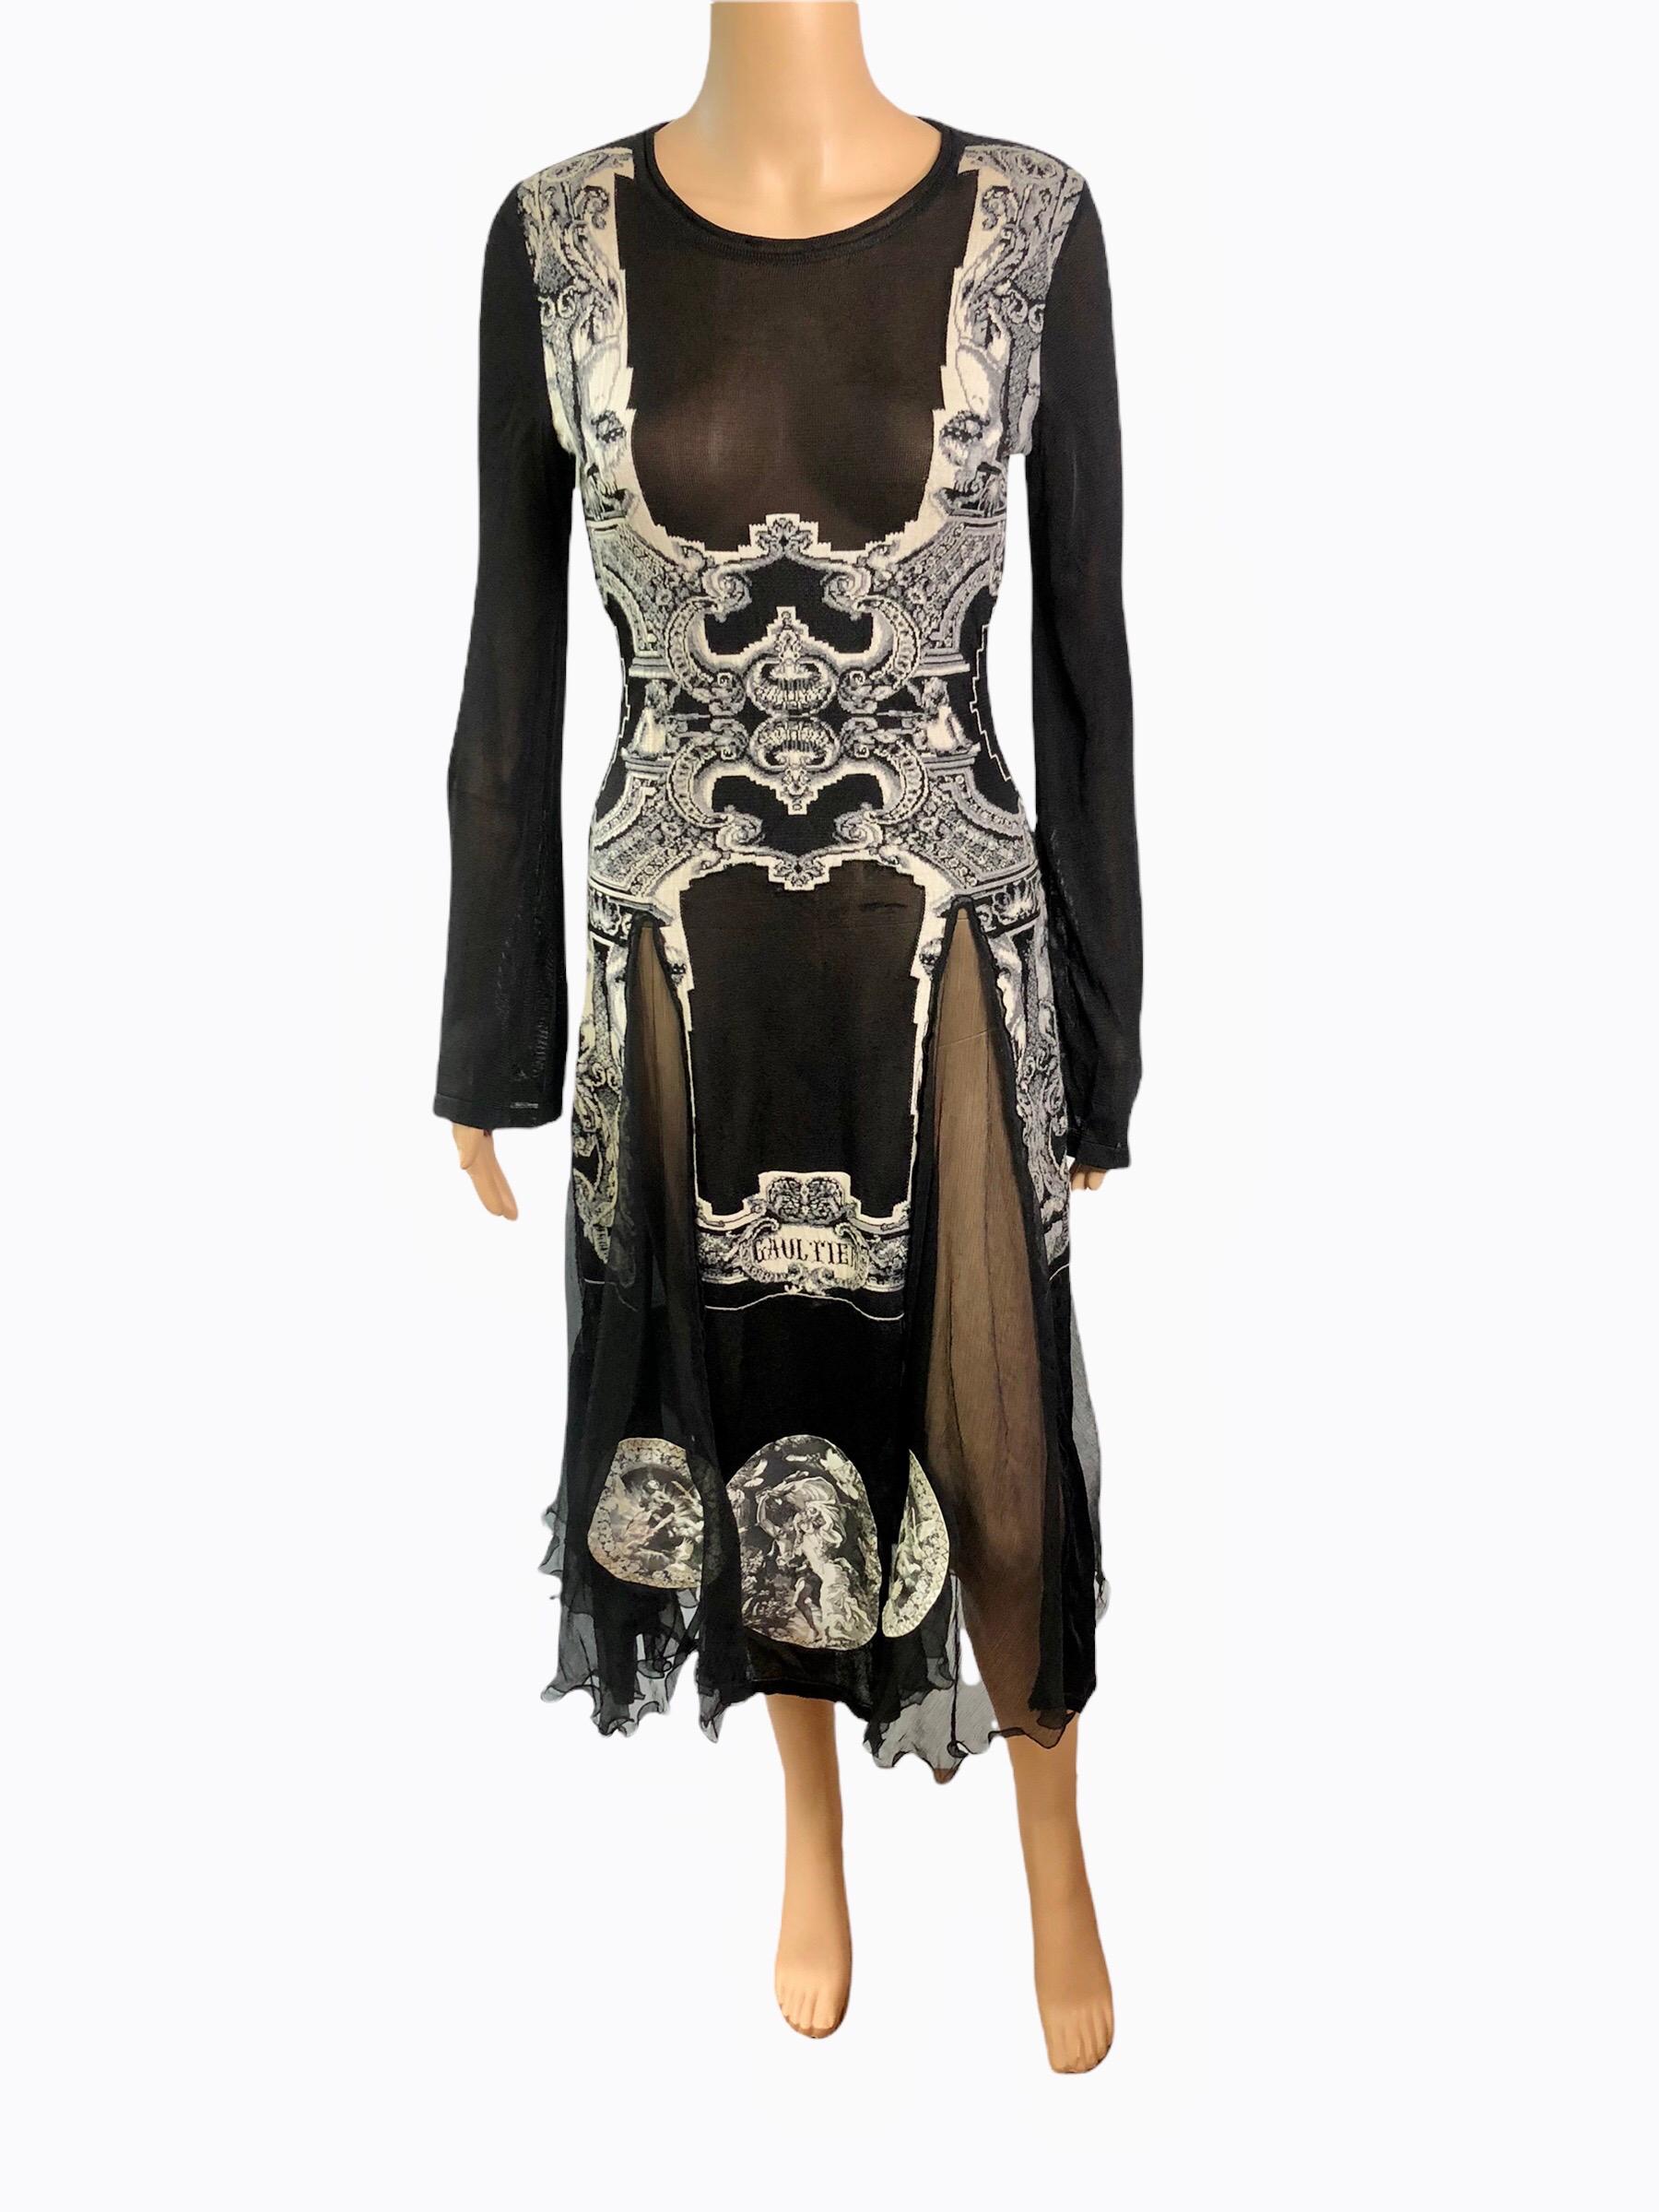 Jean Paul Gaultier Unworn Logo Sheer Panels Knitted Midi Dress Size XS

